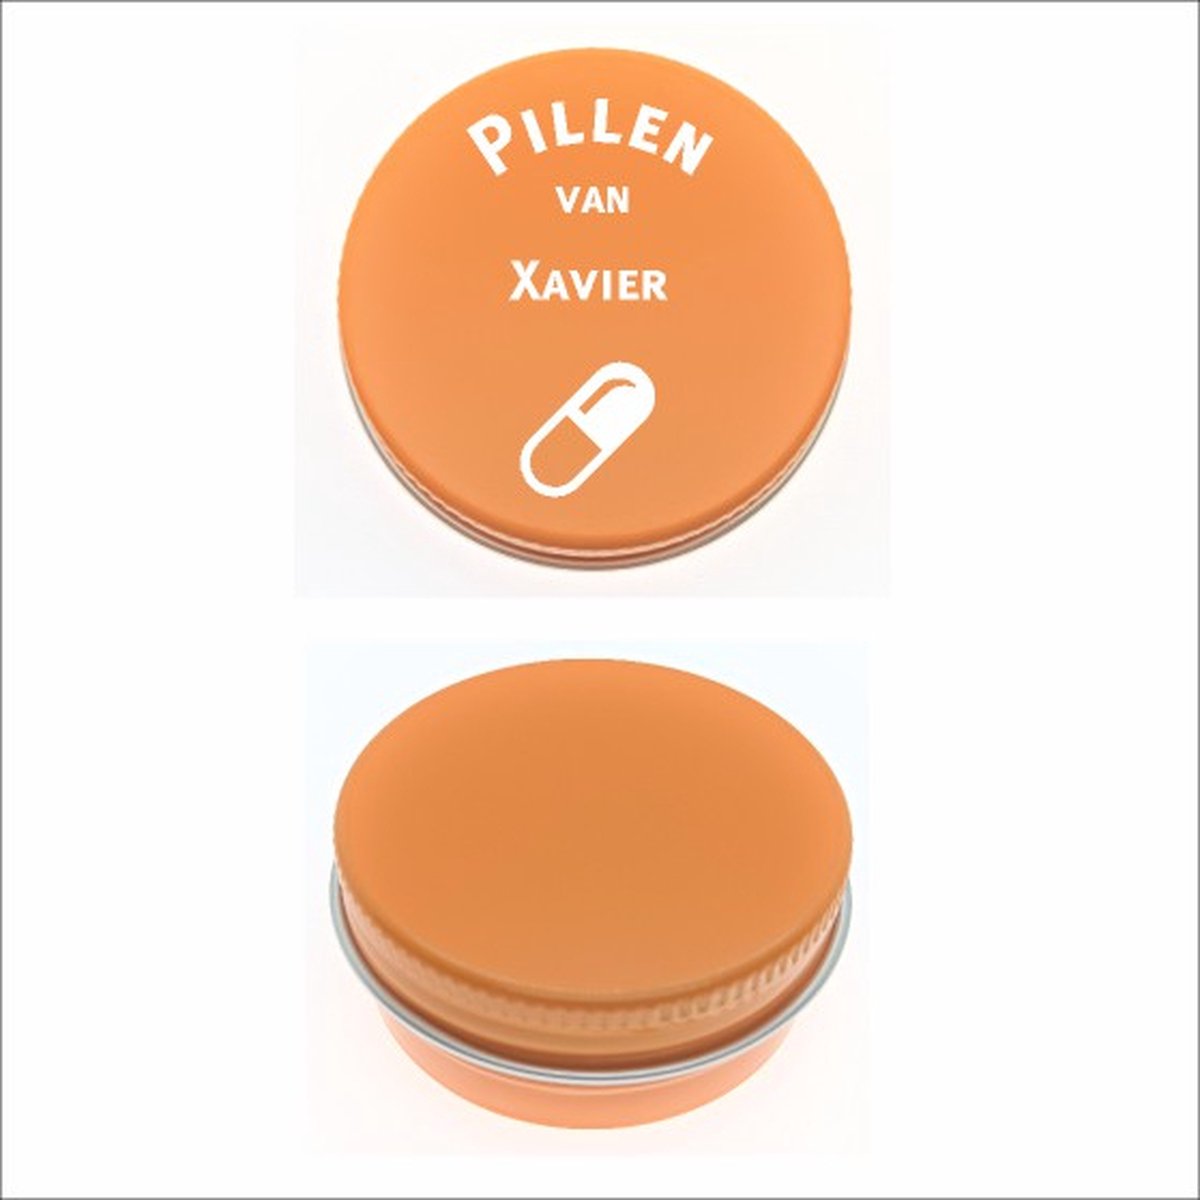 Pillen Blikje Met Naam Gravering - Xavier